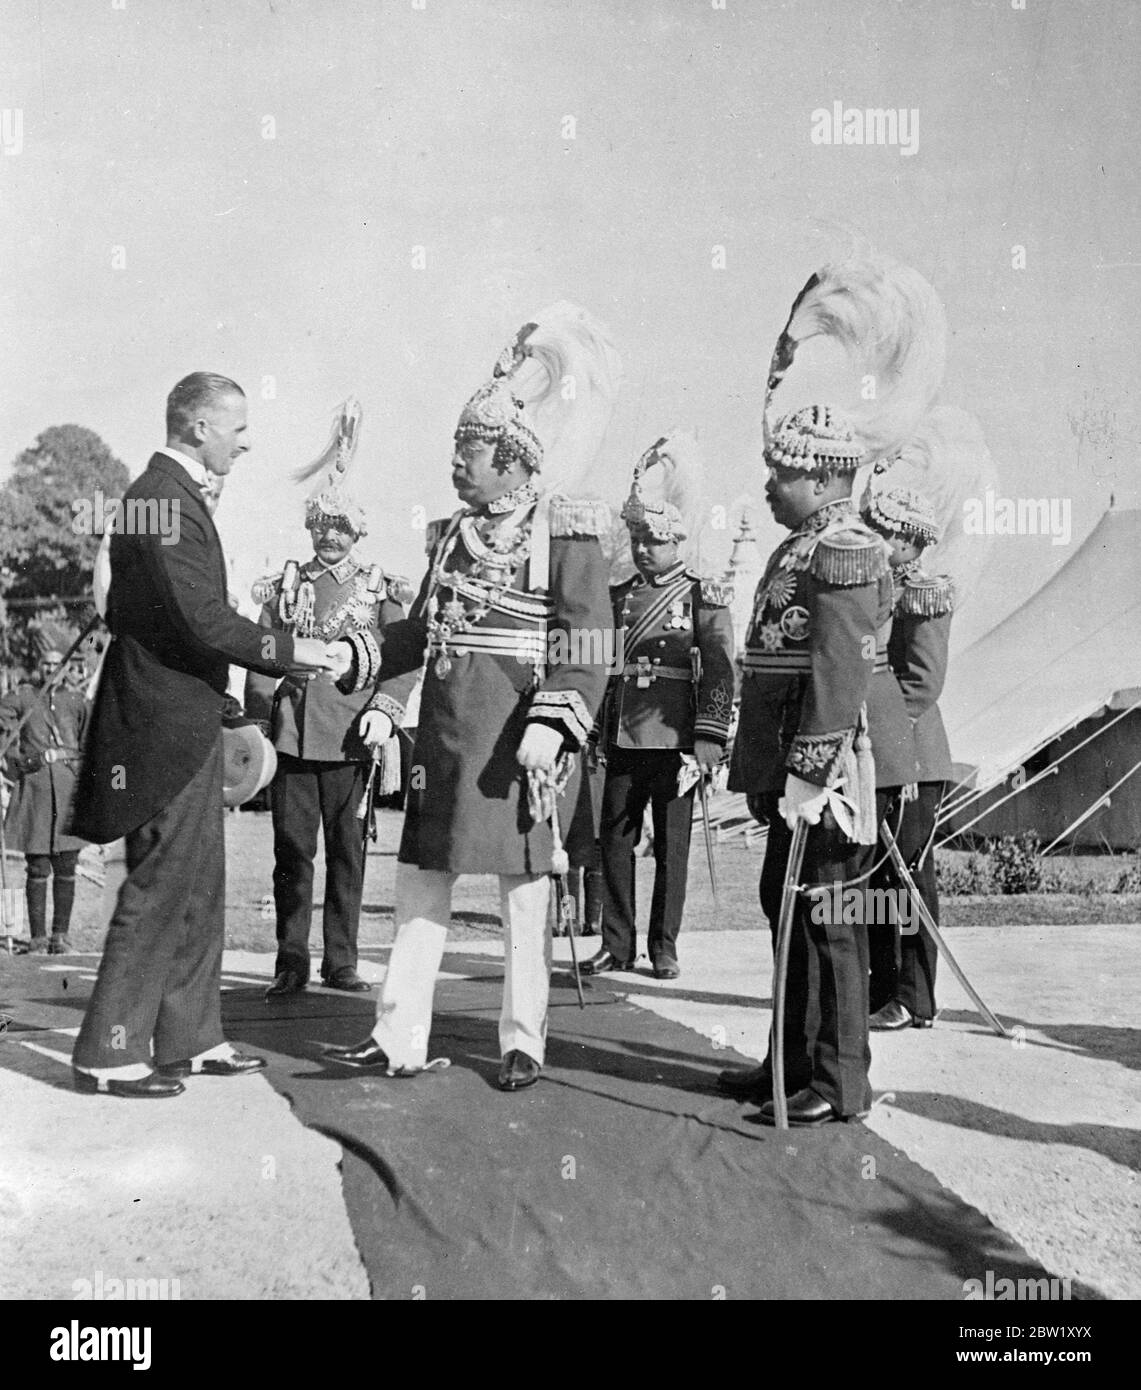 Exklusive Bilder vom silbernen Jubiläum des Königs von Nepal. Diese exklusiven Bilder illustrieren die Feierlichkeiten, die im Zusammenhang mit dem silbernen Jubiläum des Trubhubana bis Vikram Sah, 31-jährigen Königs von Nepal, der 1911 auf den Thron kam, stattfanden. Die ganze Hauptstadt zog Gala-Kleidung an und Zehntausende von Untertanen sahen die Parade der Juwelen-Elefanten und der gesamten Armee im Rückblick. Diese Bilder wurden auf besondere Einladung in der Hauptstadt Kathmandu aufgenommen. Foto zeigt, der Premierminister, Sir Joodha Shumshere Jung Bahadur Rana, begrüßt von Herrn R Kilburn, nur Europäer in der Stockfoto